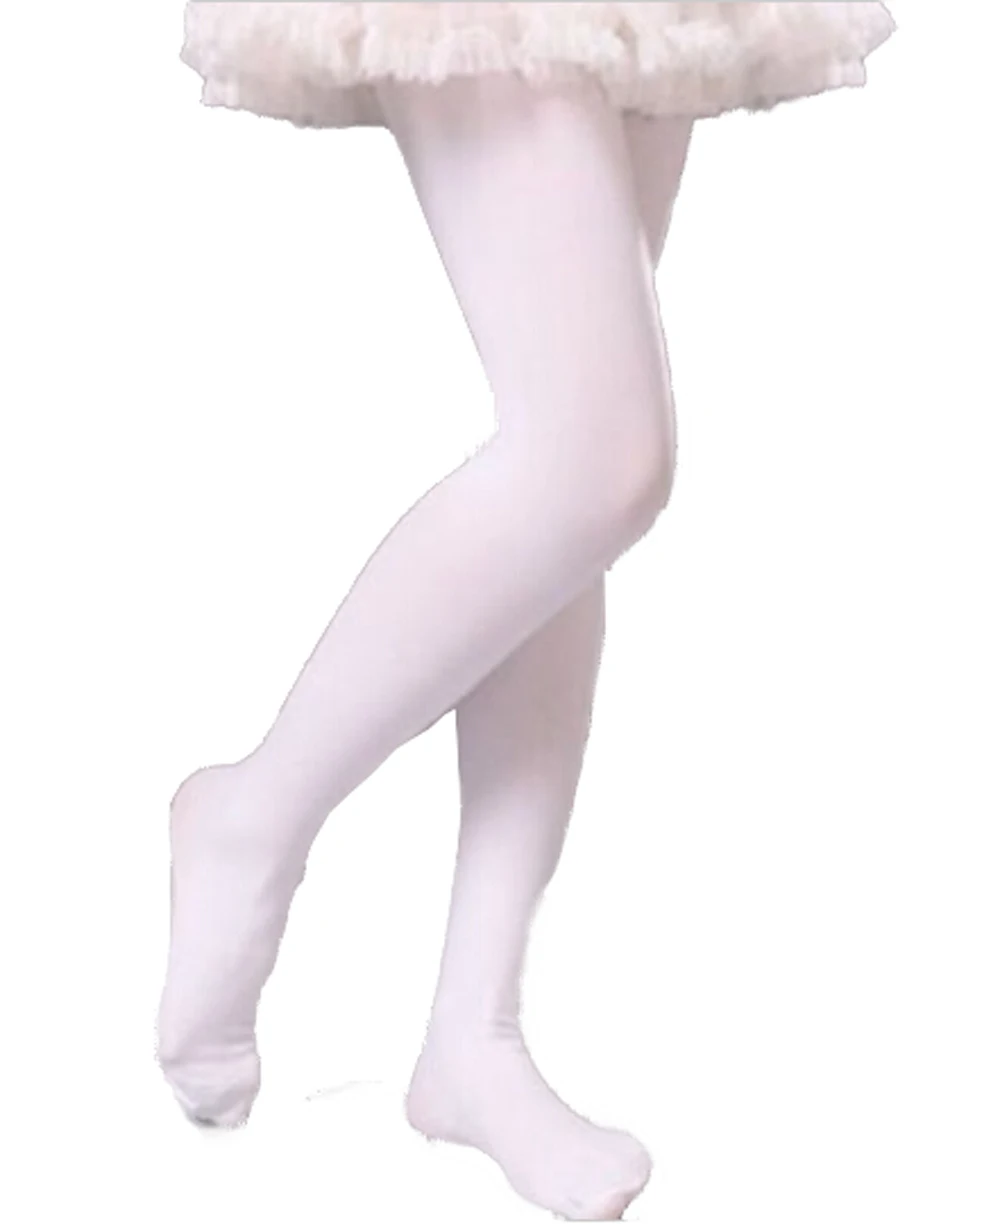 Мягкие детские колготки для маленьких девочек бархатные носки для занятий балетом размеры S/M/L - Цвет: Белый